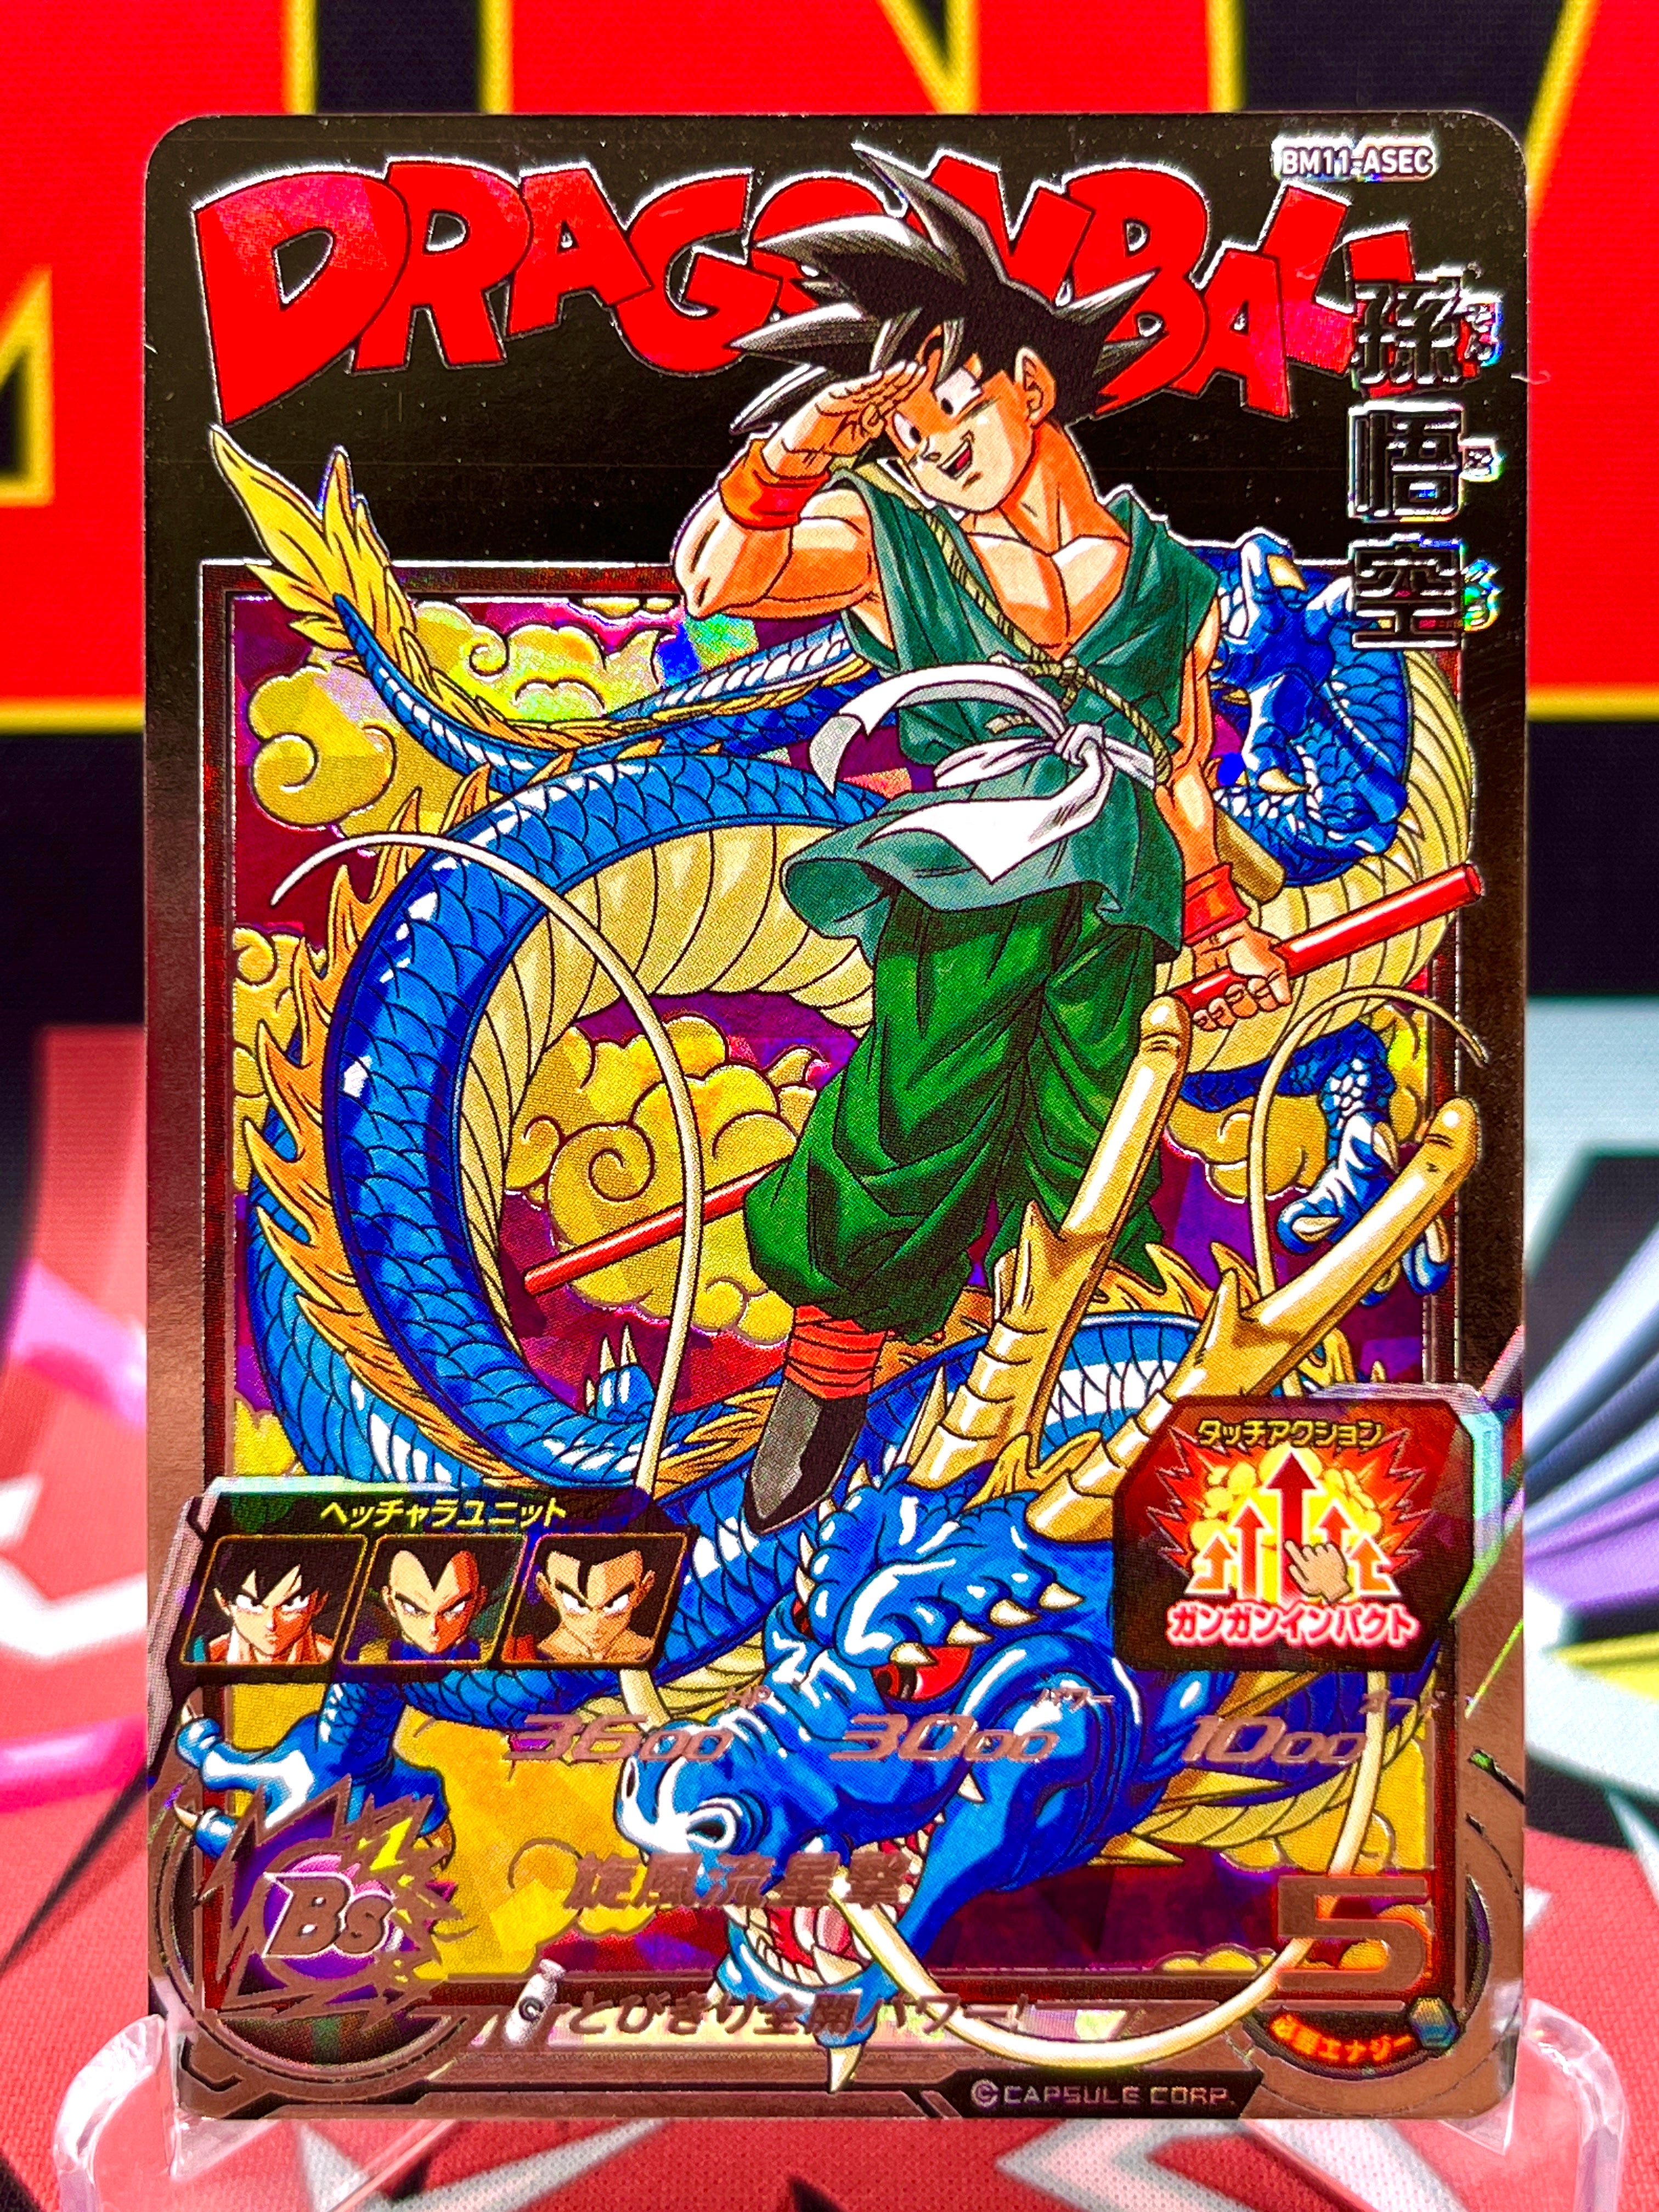 BM11-ASEC Son Goku (2021)